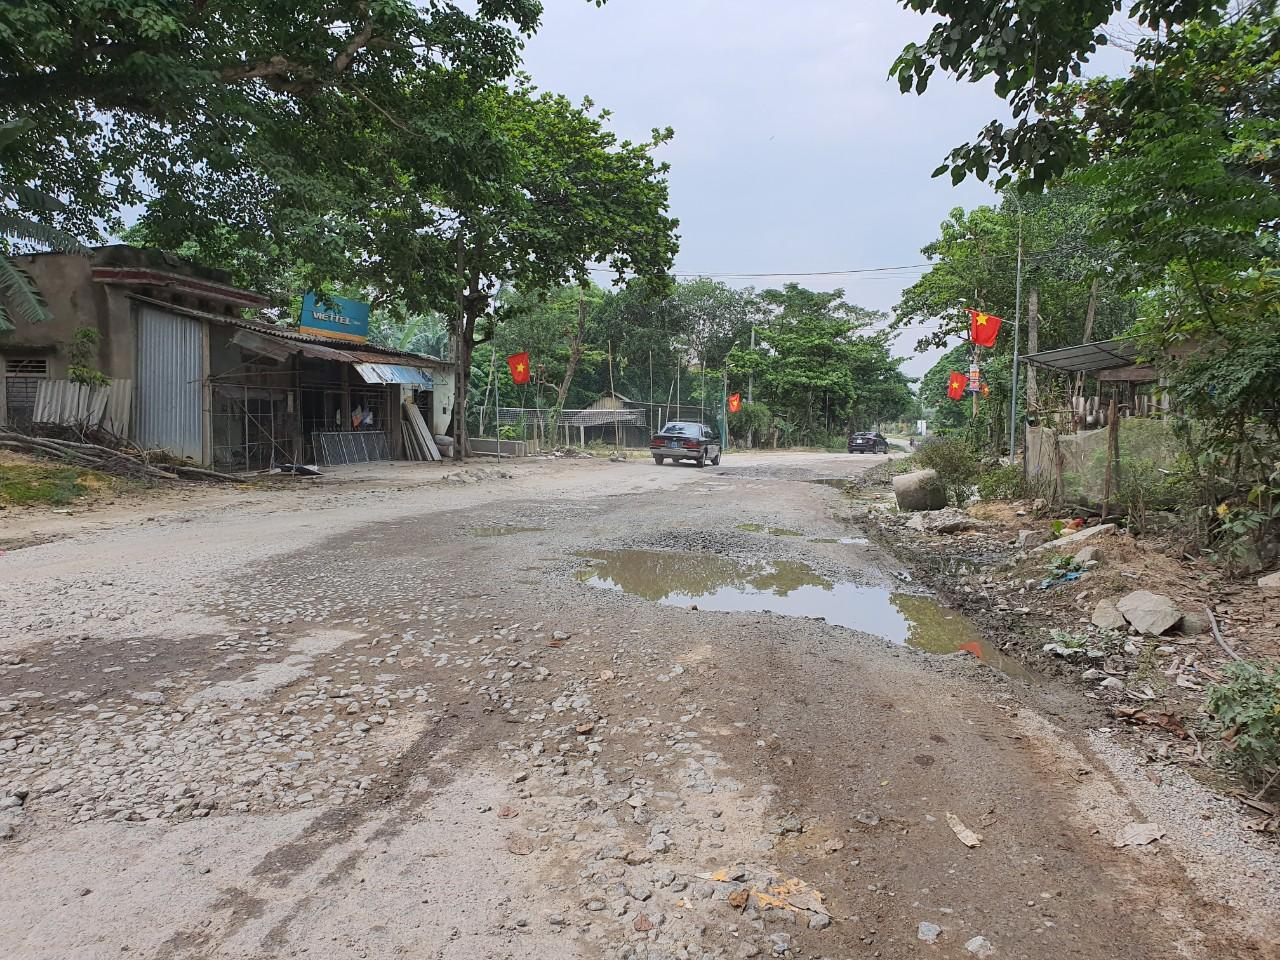 Quốc lộ 8A đoạn qua huyện Hương Sơn, Hà Tĩnh lên cửa khẩu Cầu Treo cũng đang 